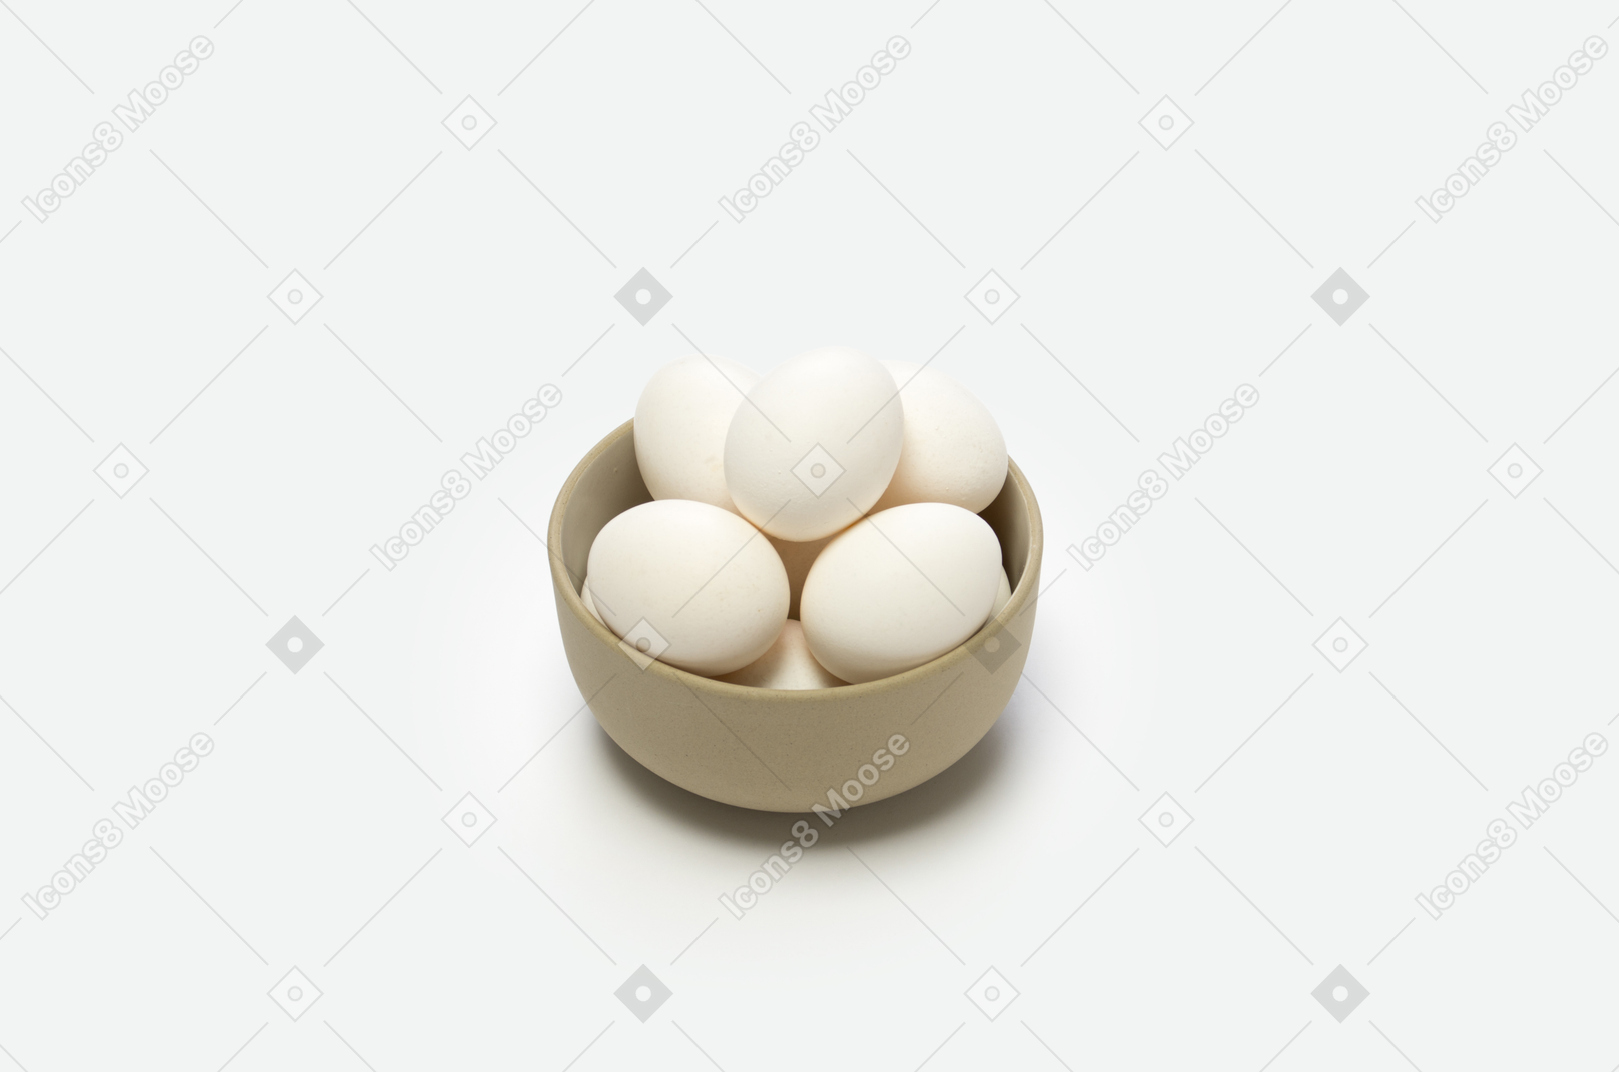 Les œufs sont une très bonne source de protéines